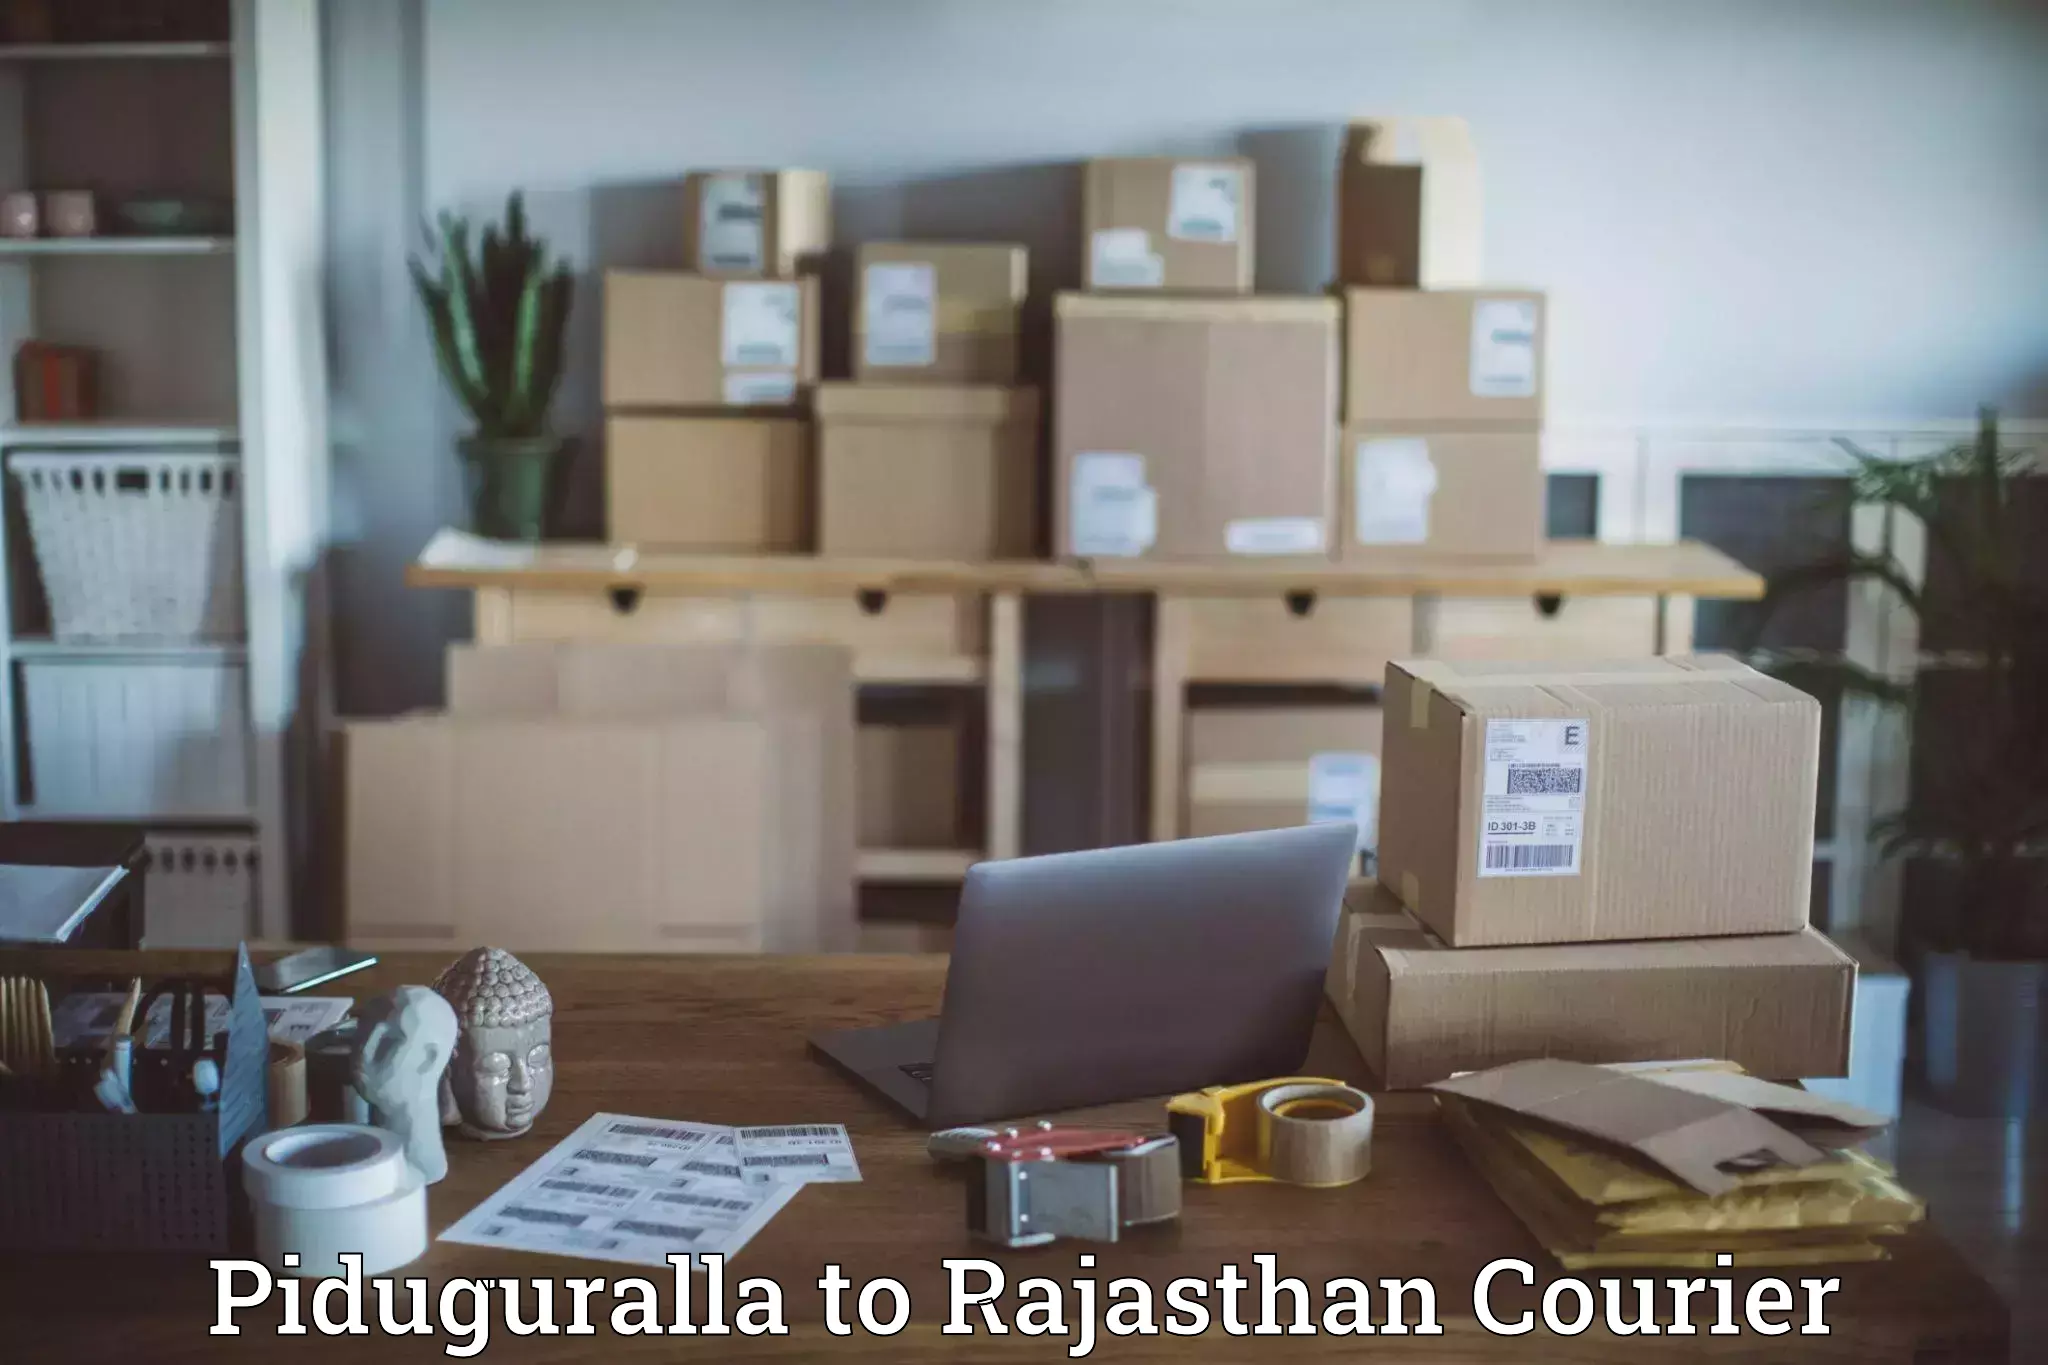 Large-scale shipping solutions Piduguralla to Jawahar Nagar